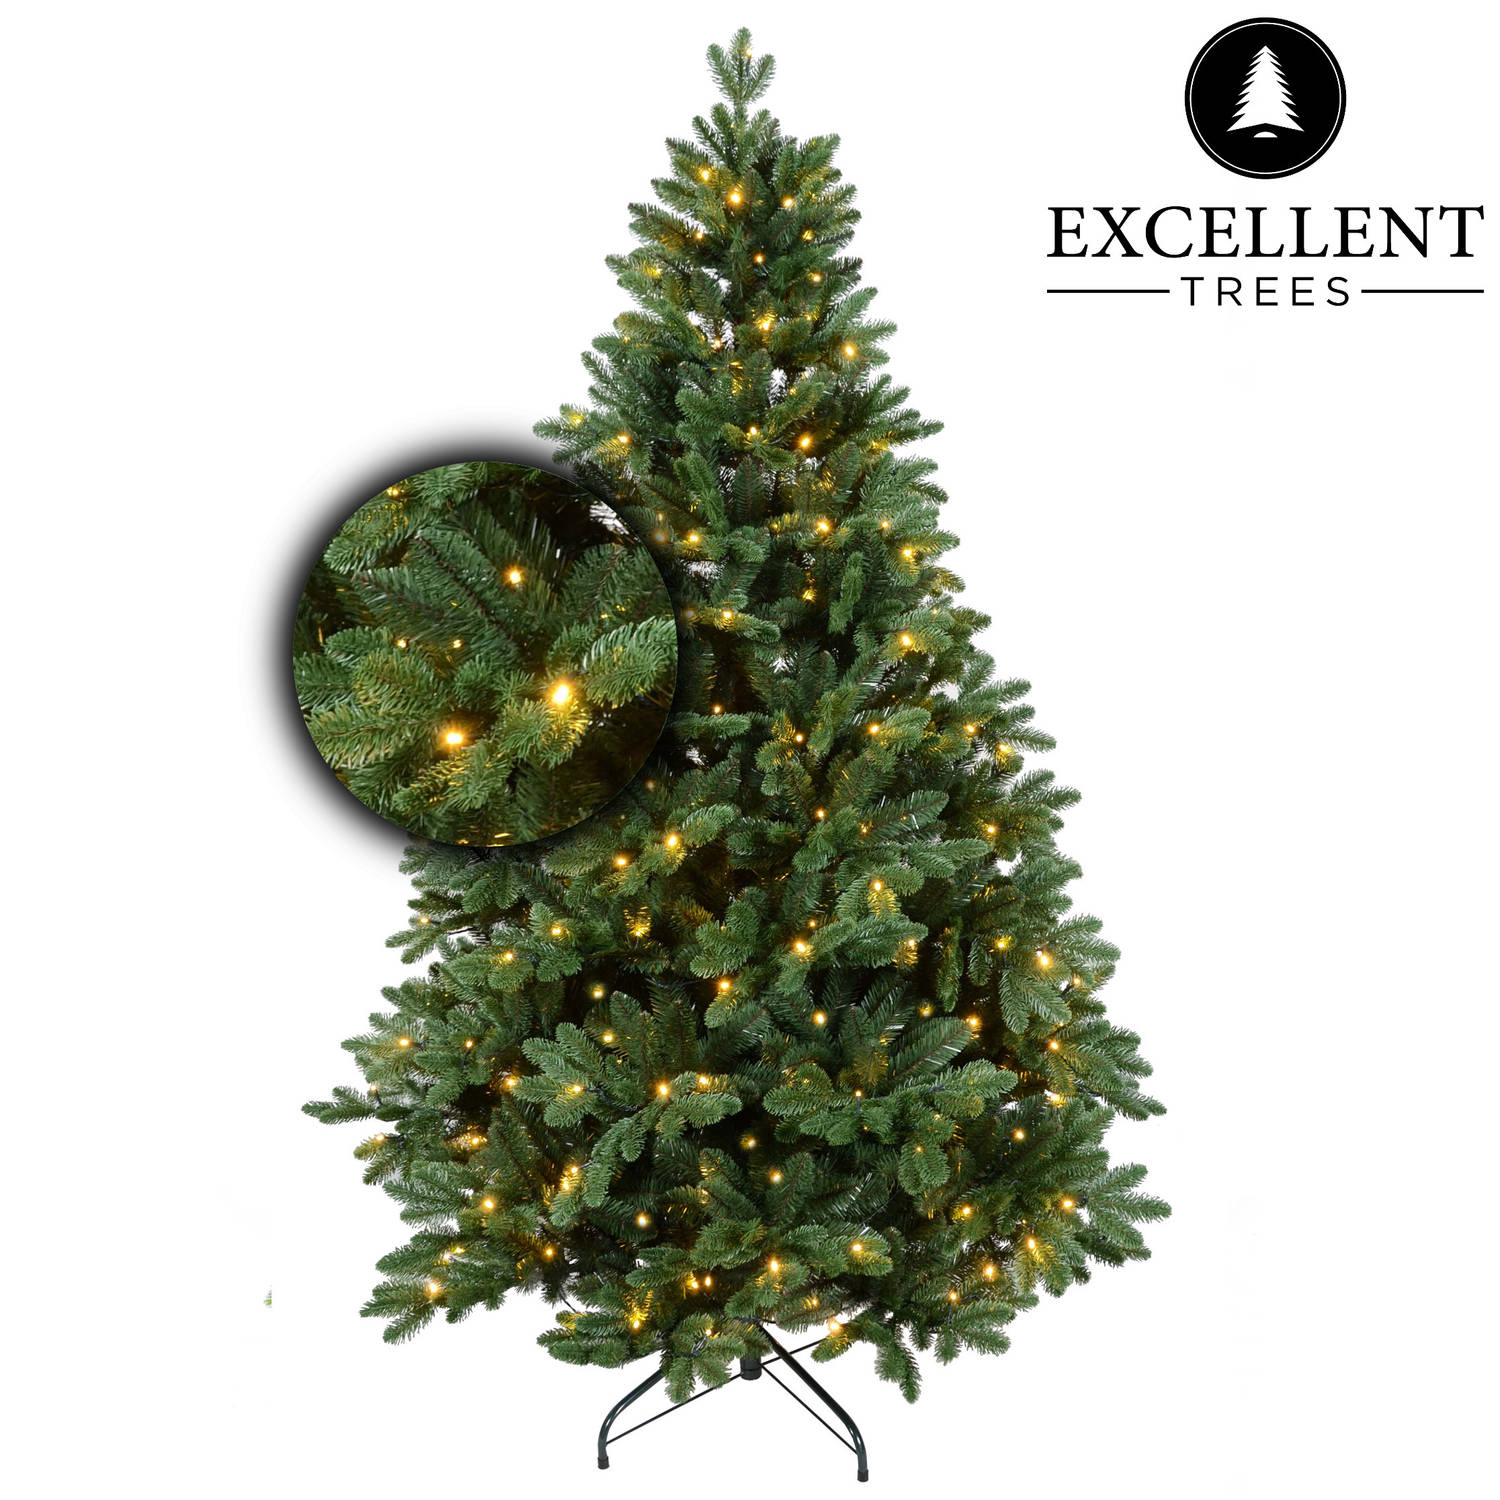 Kerstboom Excellent Trees® LED Mantorp 180 cm met verlichting Luxe uitvoering 280 Lampjes